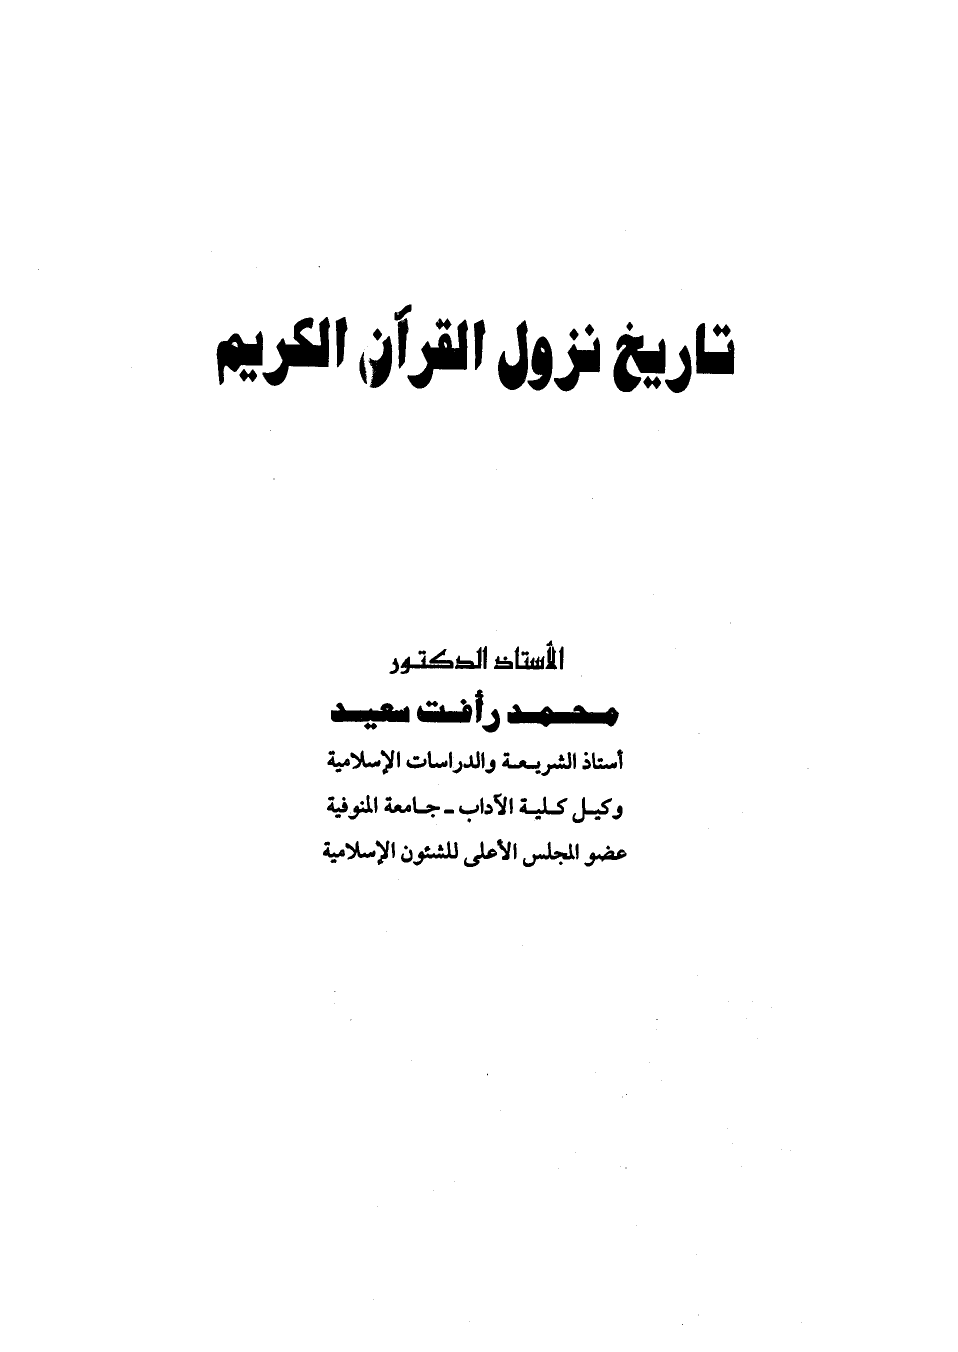 تنزيل وتحميل كتاِب تاريخ نزول القرآن الكريم pdf برابط مباشر مجاناً 